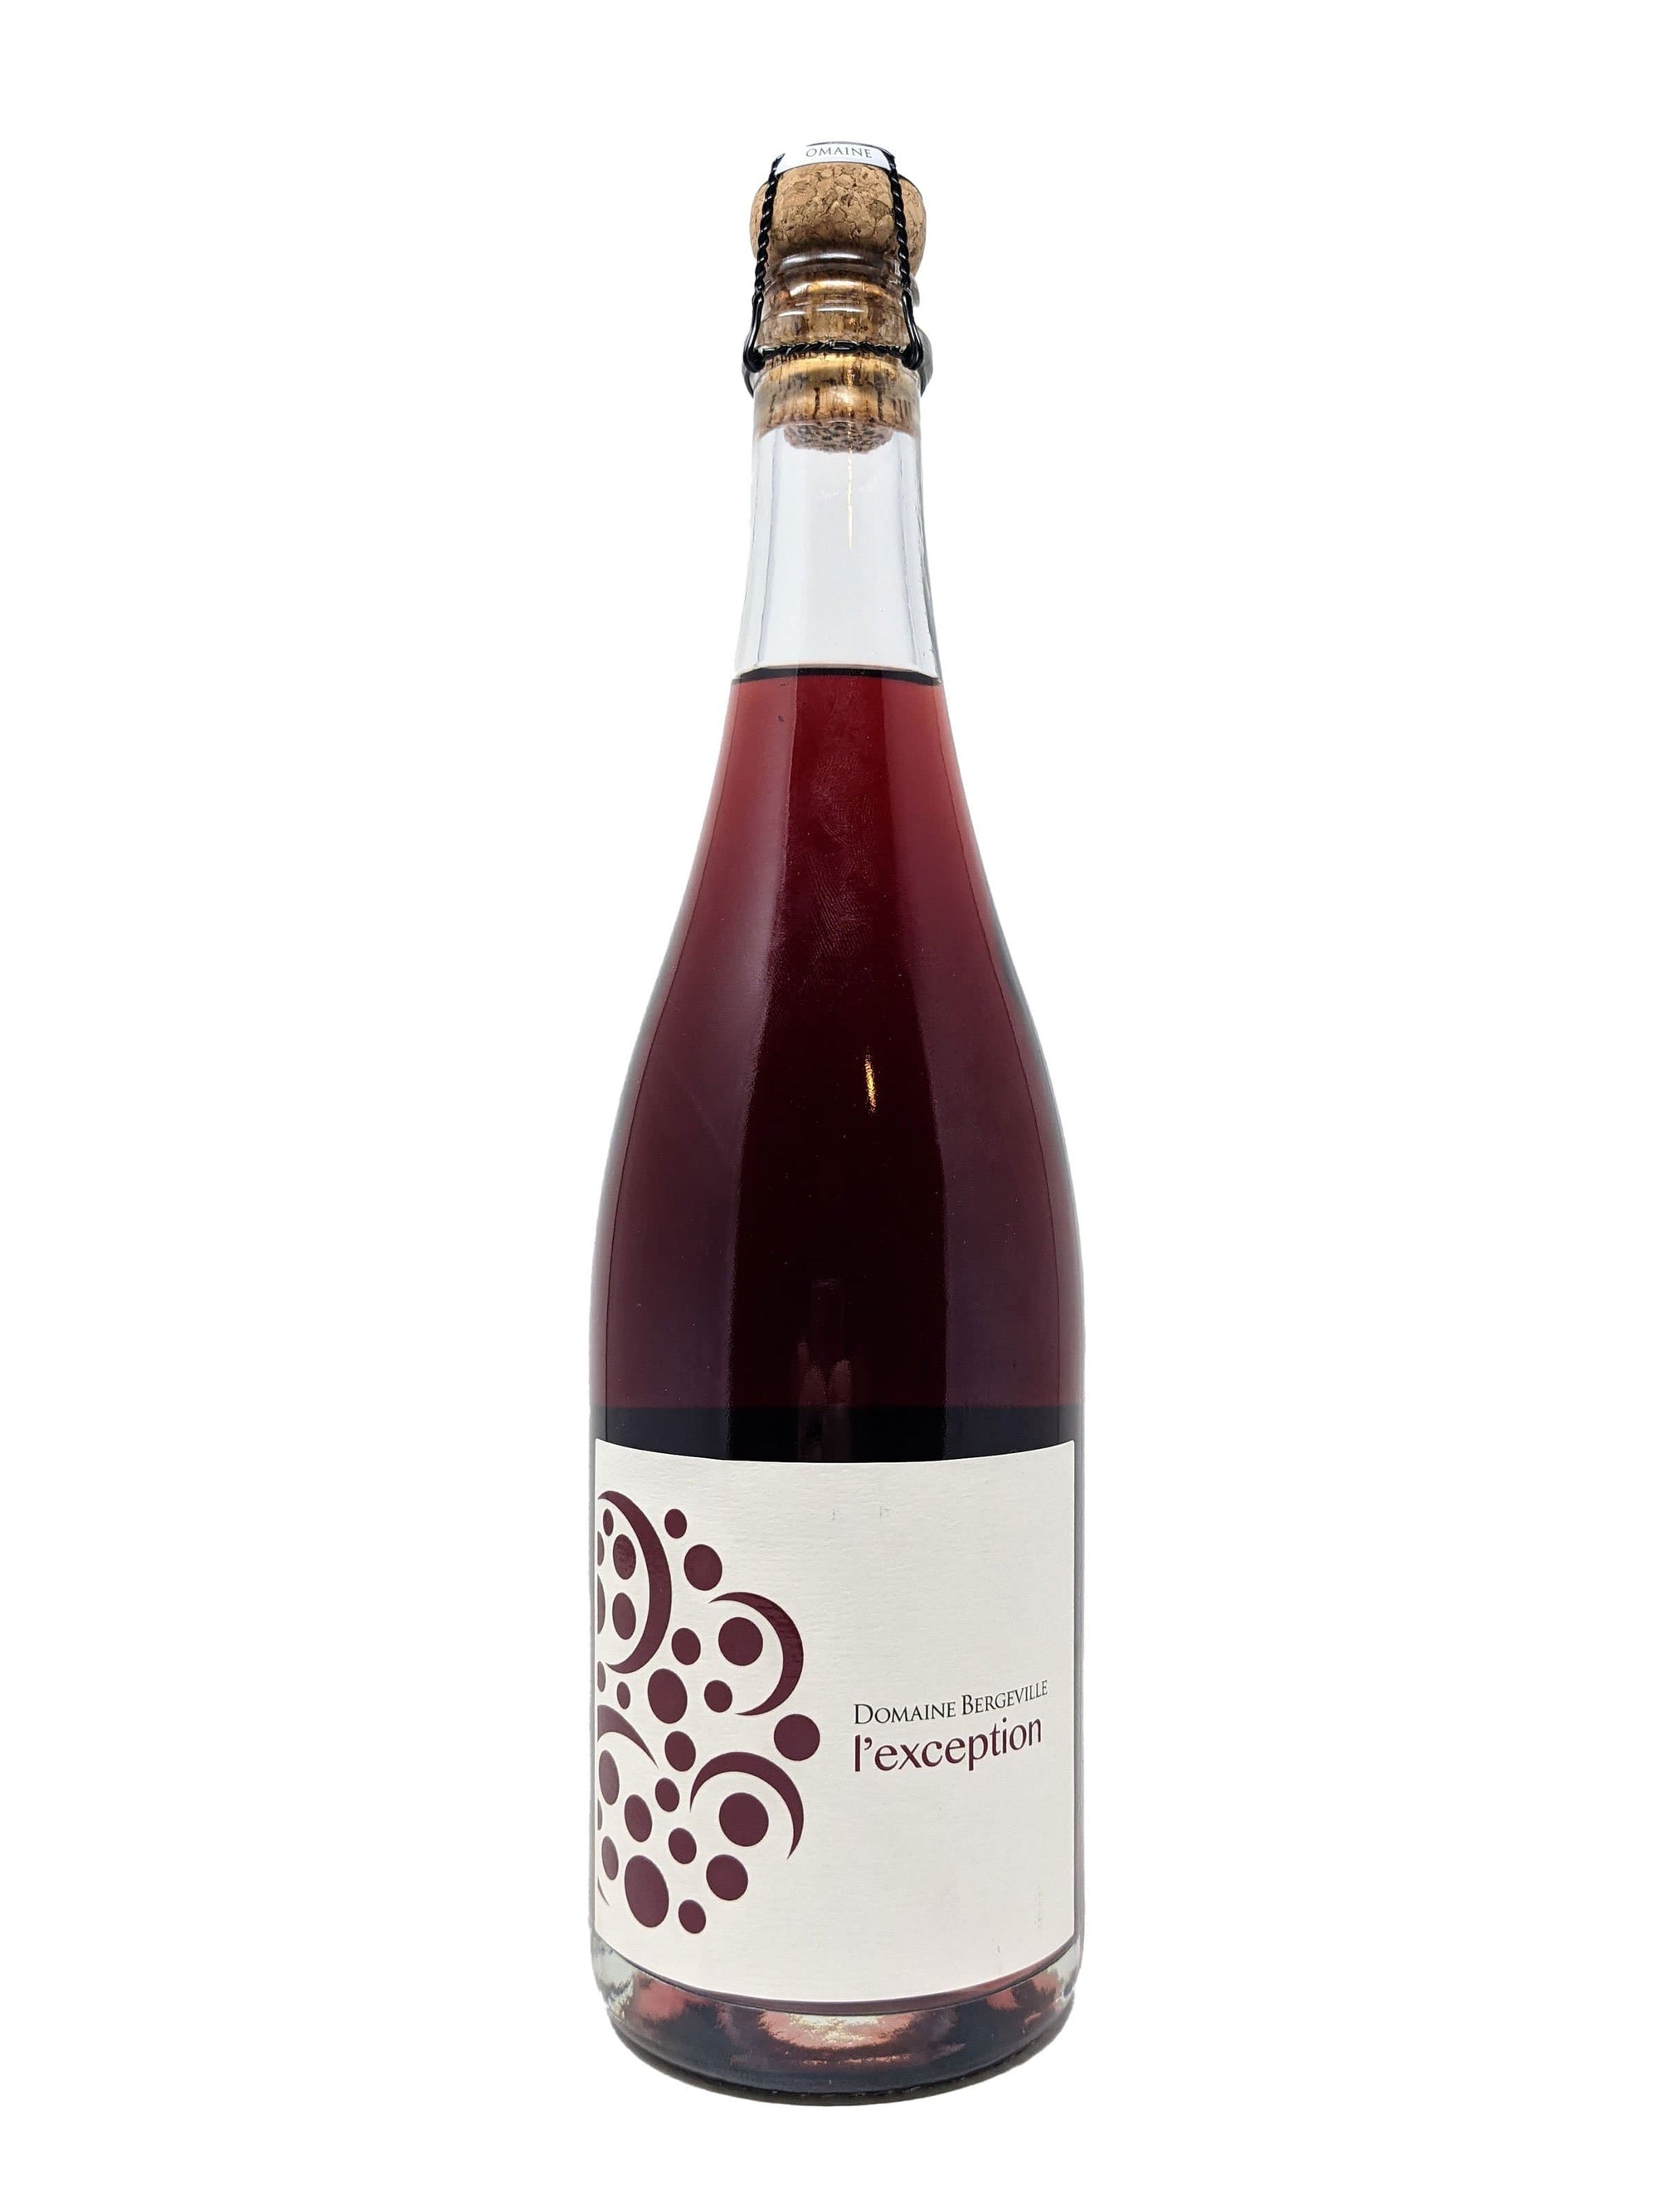 Domaine Bergeville vin L'Exception 2019 - Vin mousseux du Domaine Bergeville